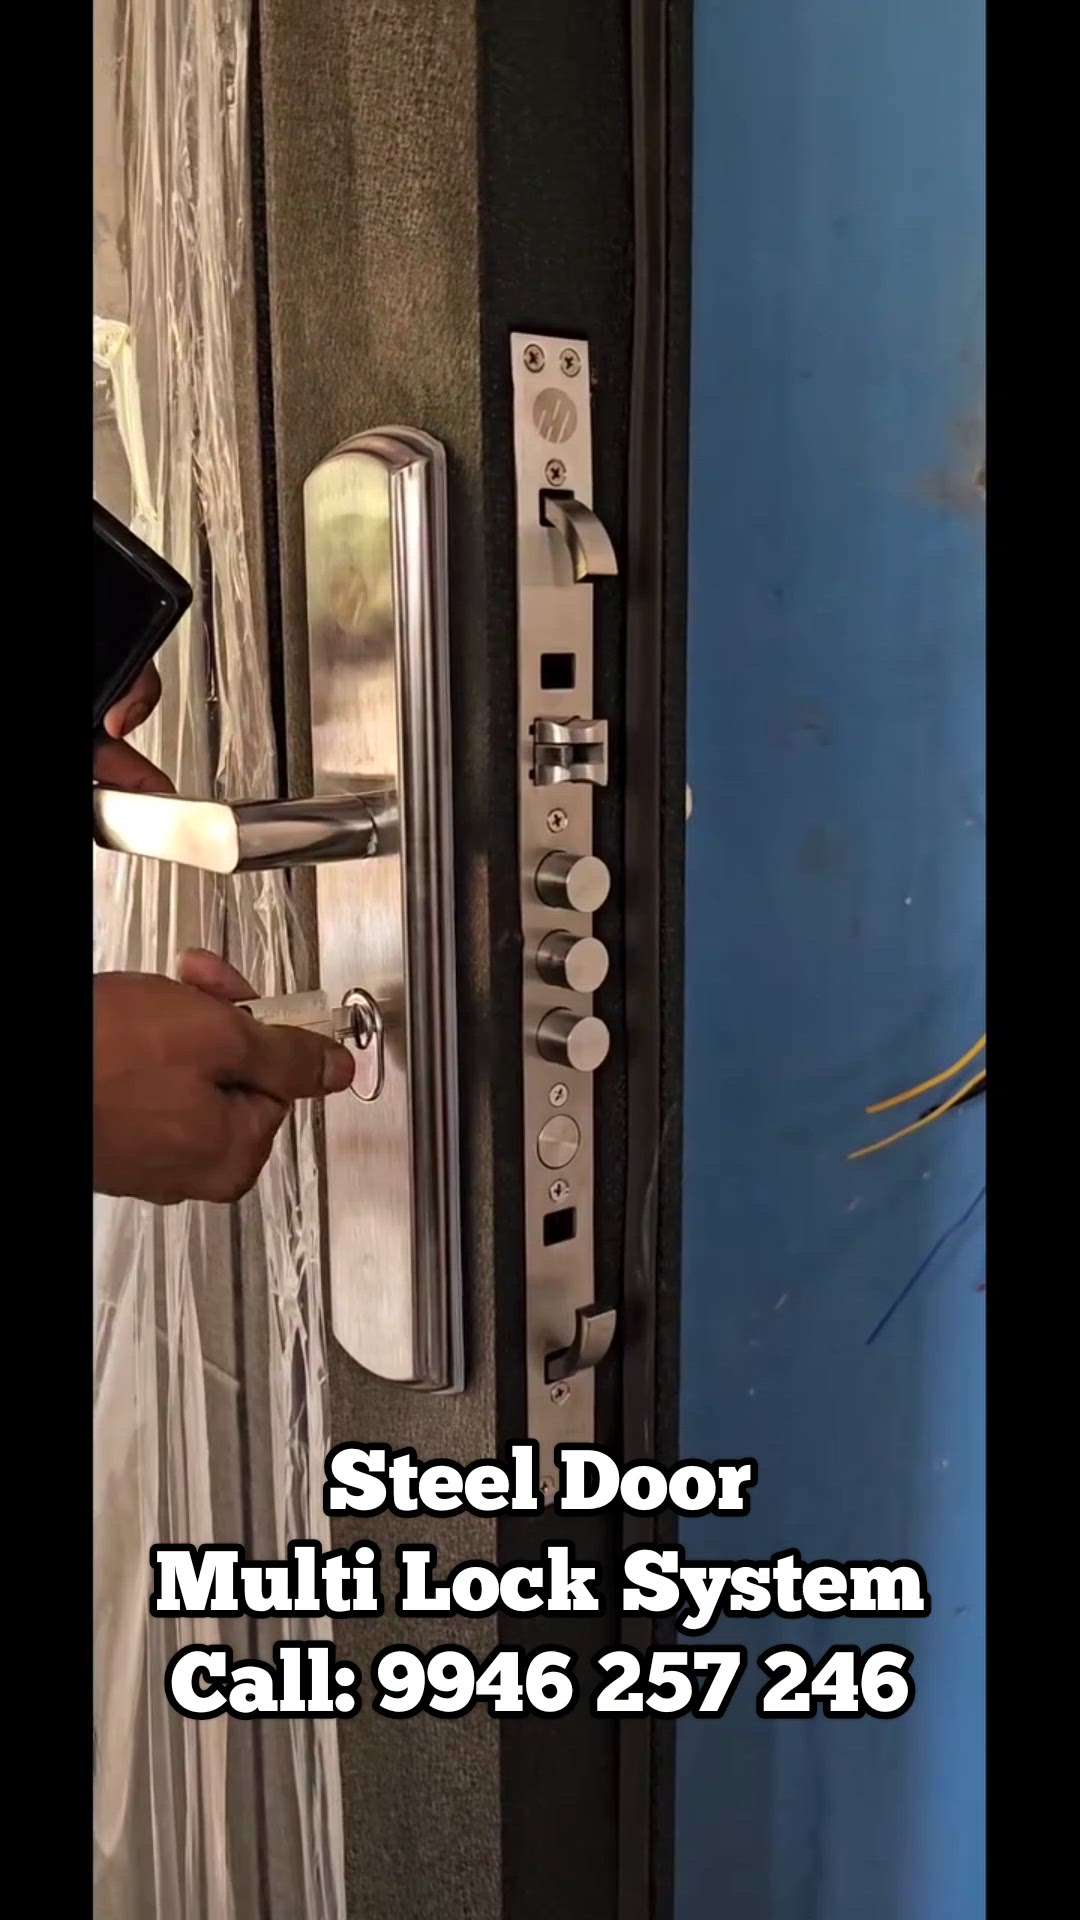 Steel door multi locking system | 9946 257 246

#Doors #steeldoors